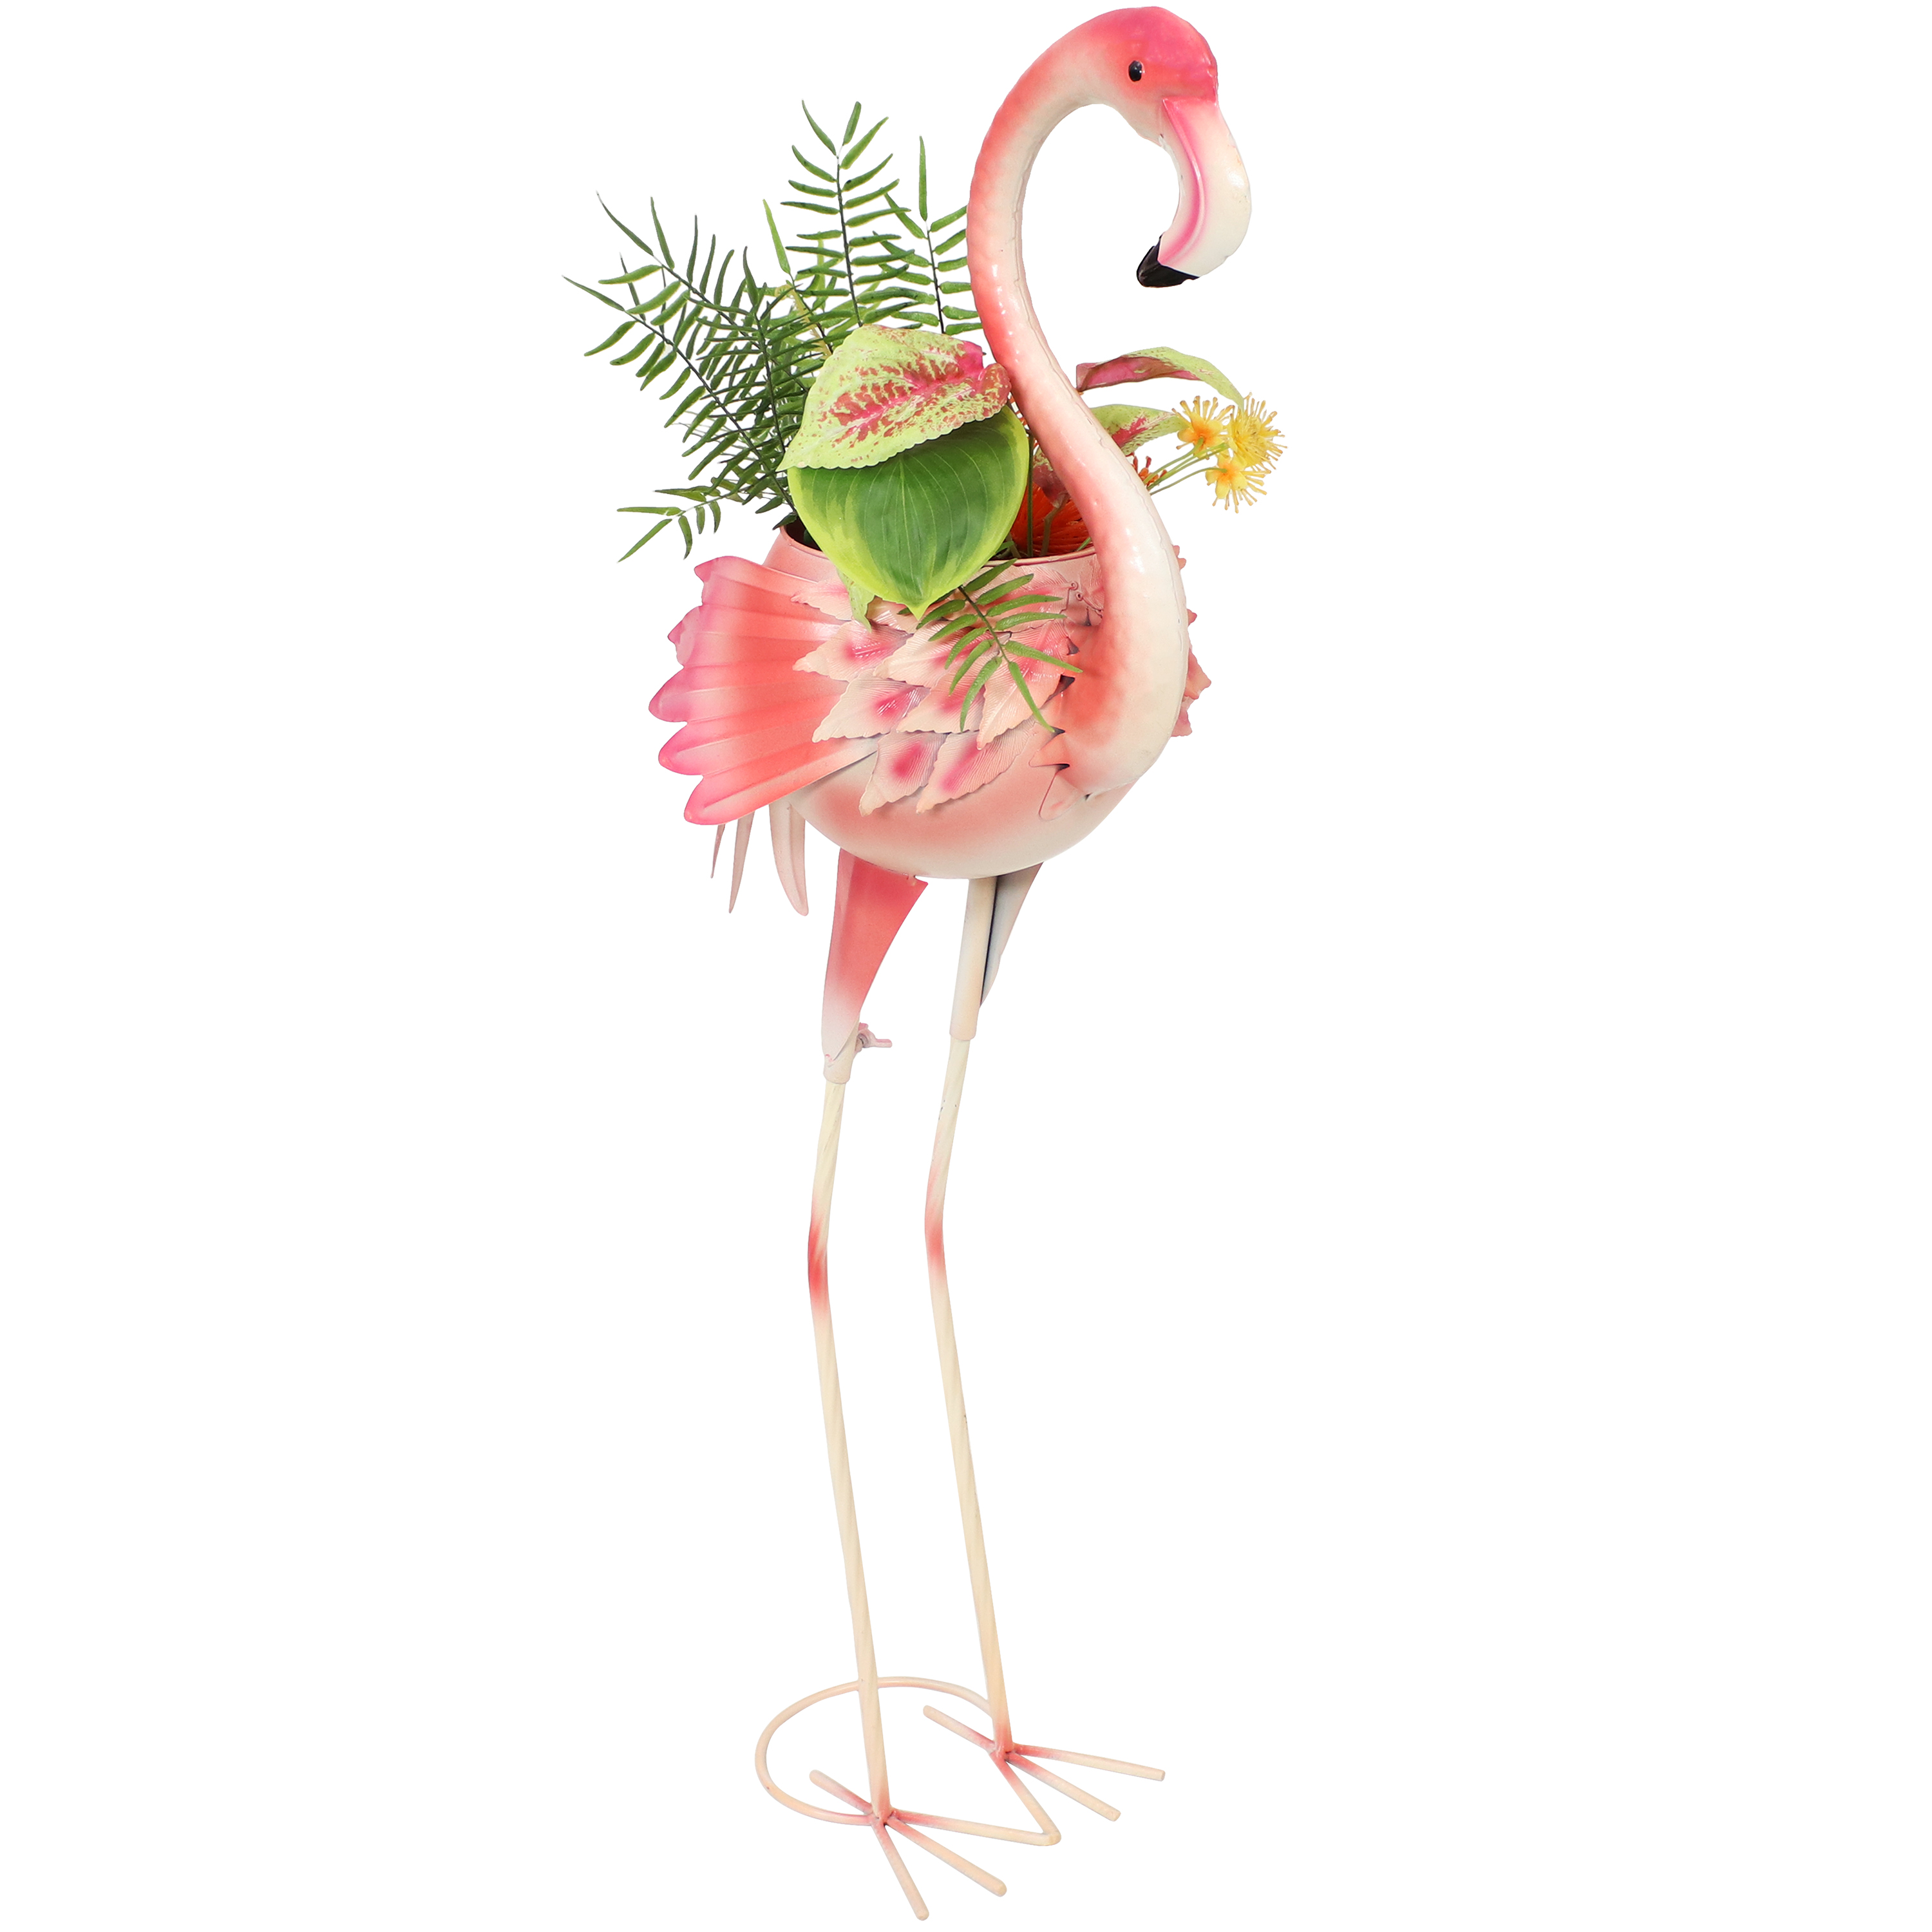 Sunnydaze Pink Flamingo Metal Outdoor Garden Statue with Flowerpot - image 1 of 11